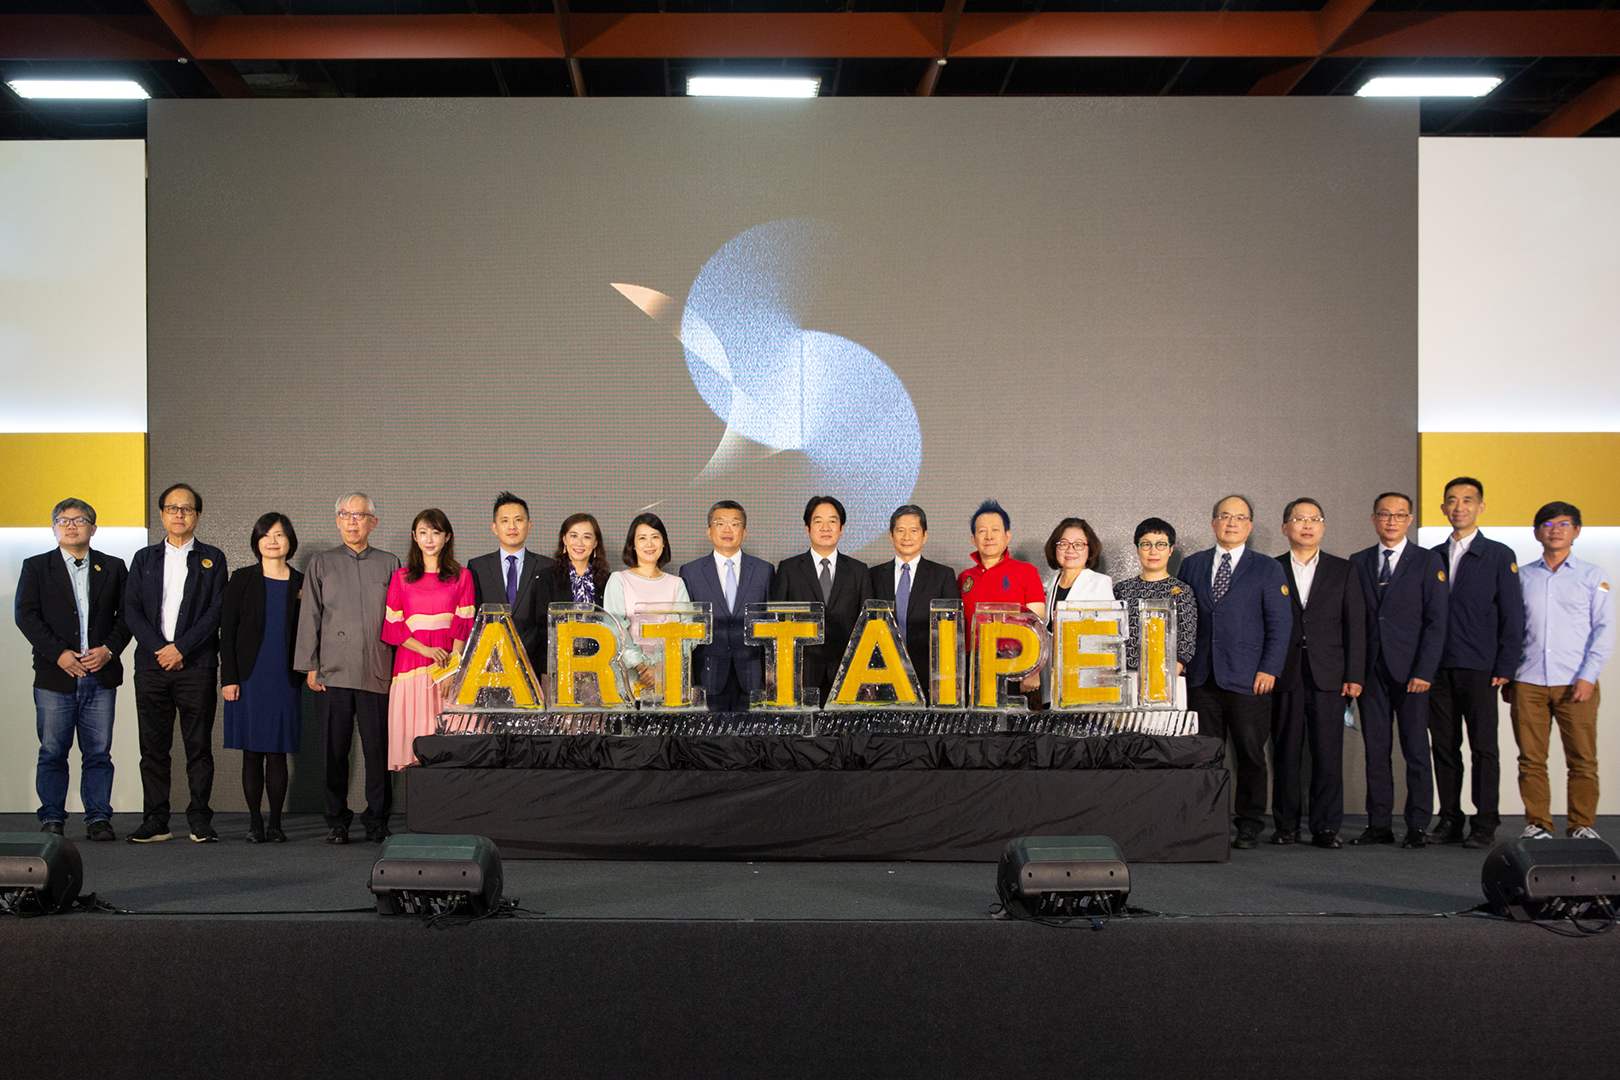 ART TAIPEI 2021 台北國際藝術博覽會盛大開幕!